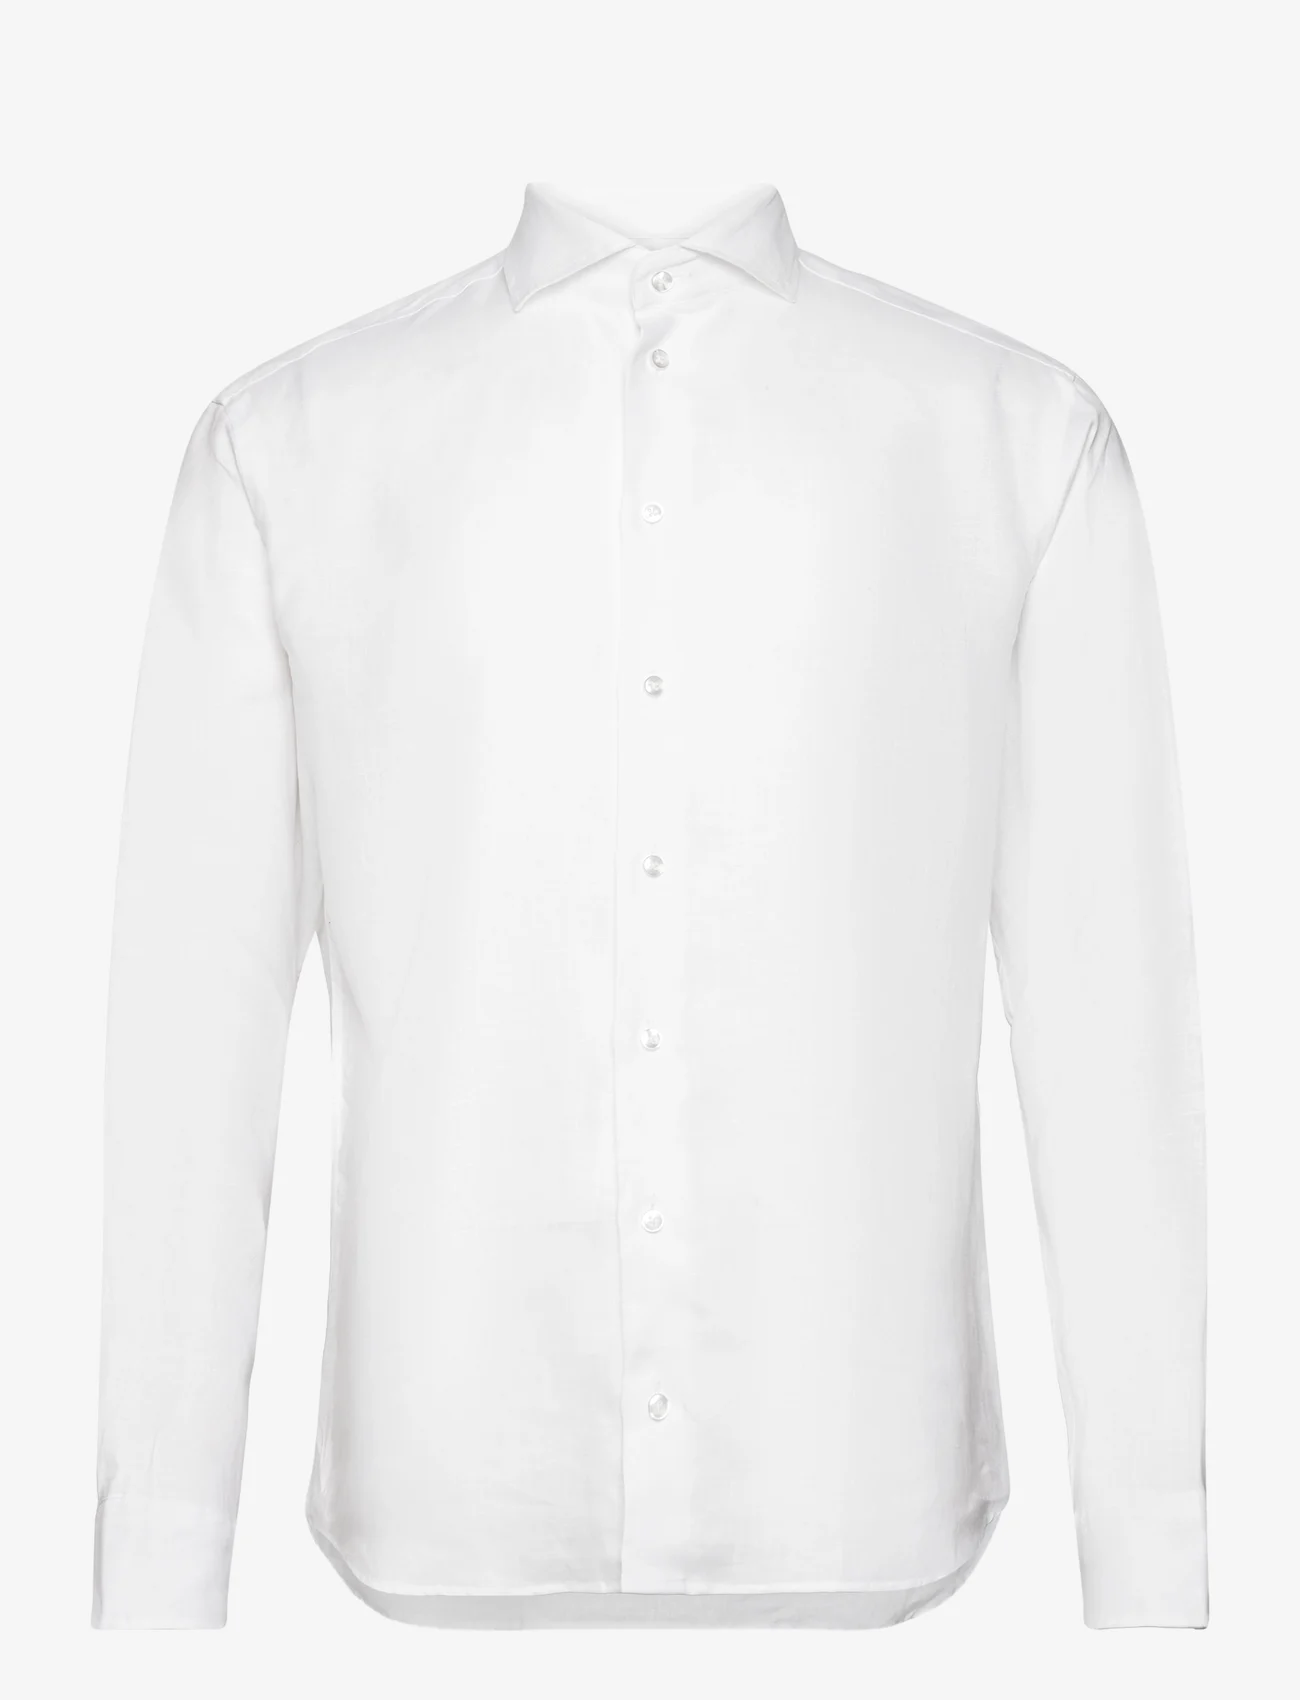 Bosweel Shirts Est. 1937 - Regular fit Men shirt - leinenhemden - white - 0